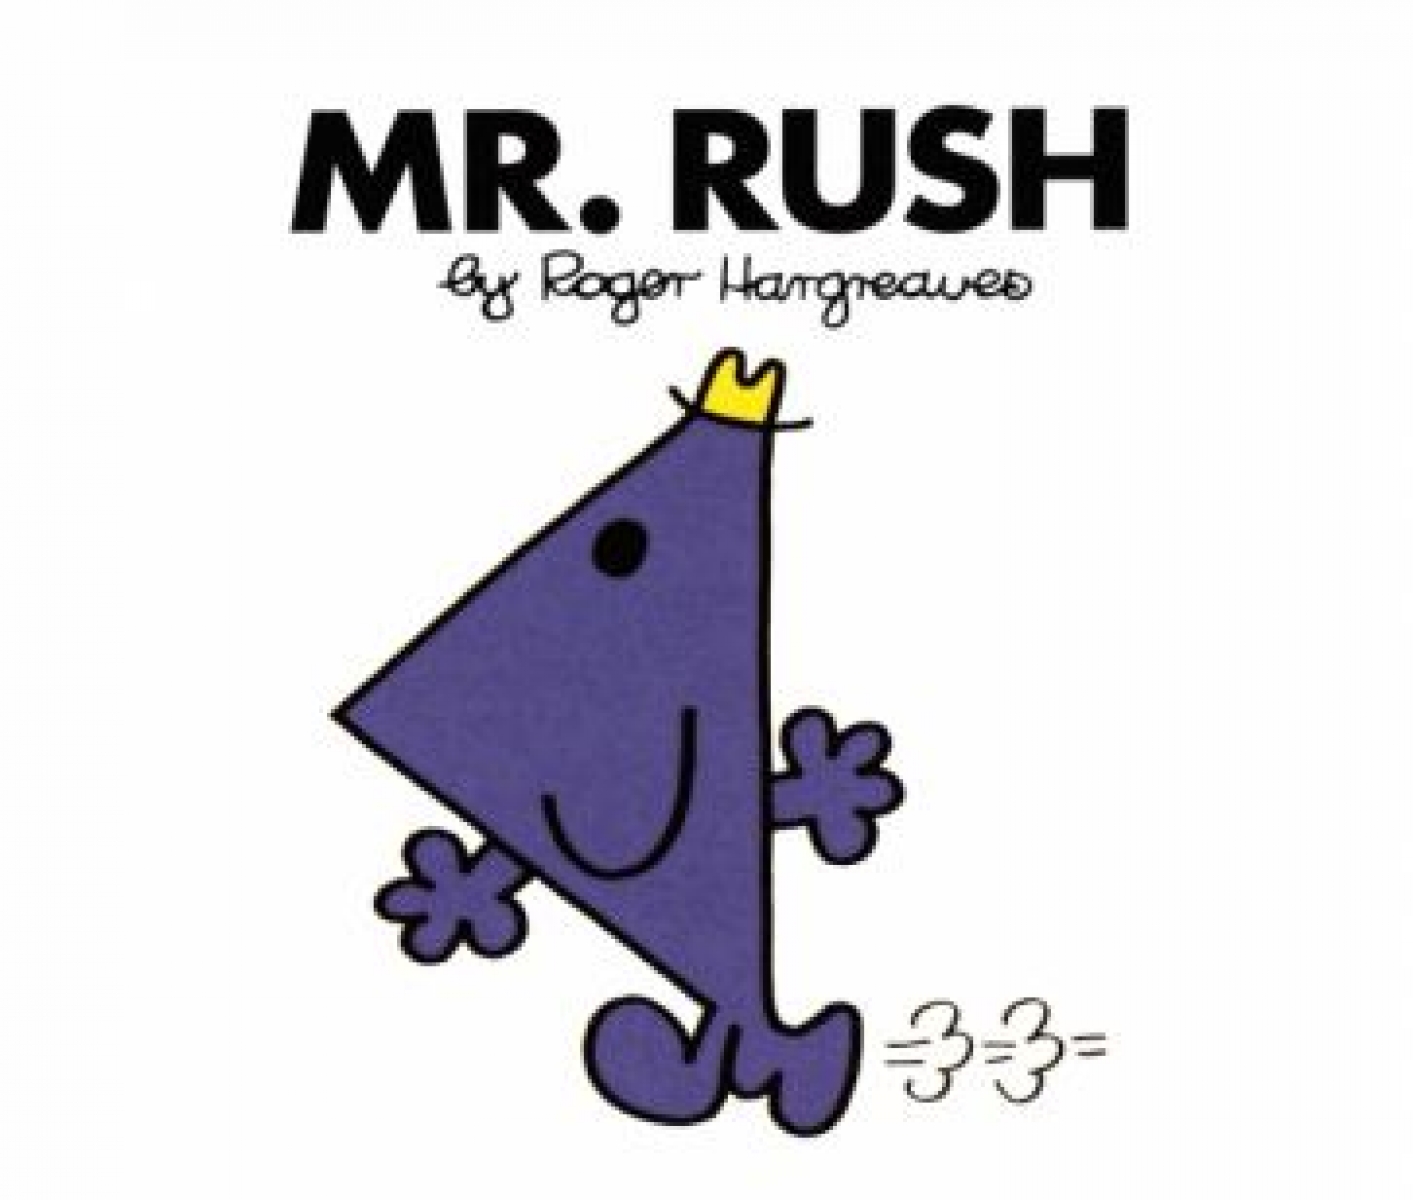 Hargreaves Roger Mr. Rush 